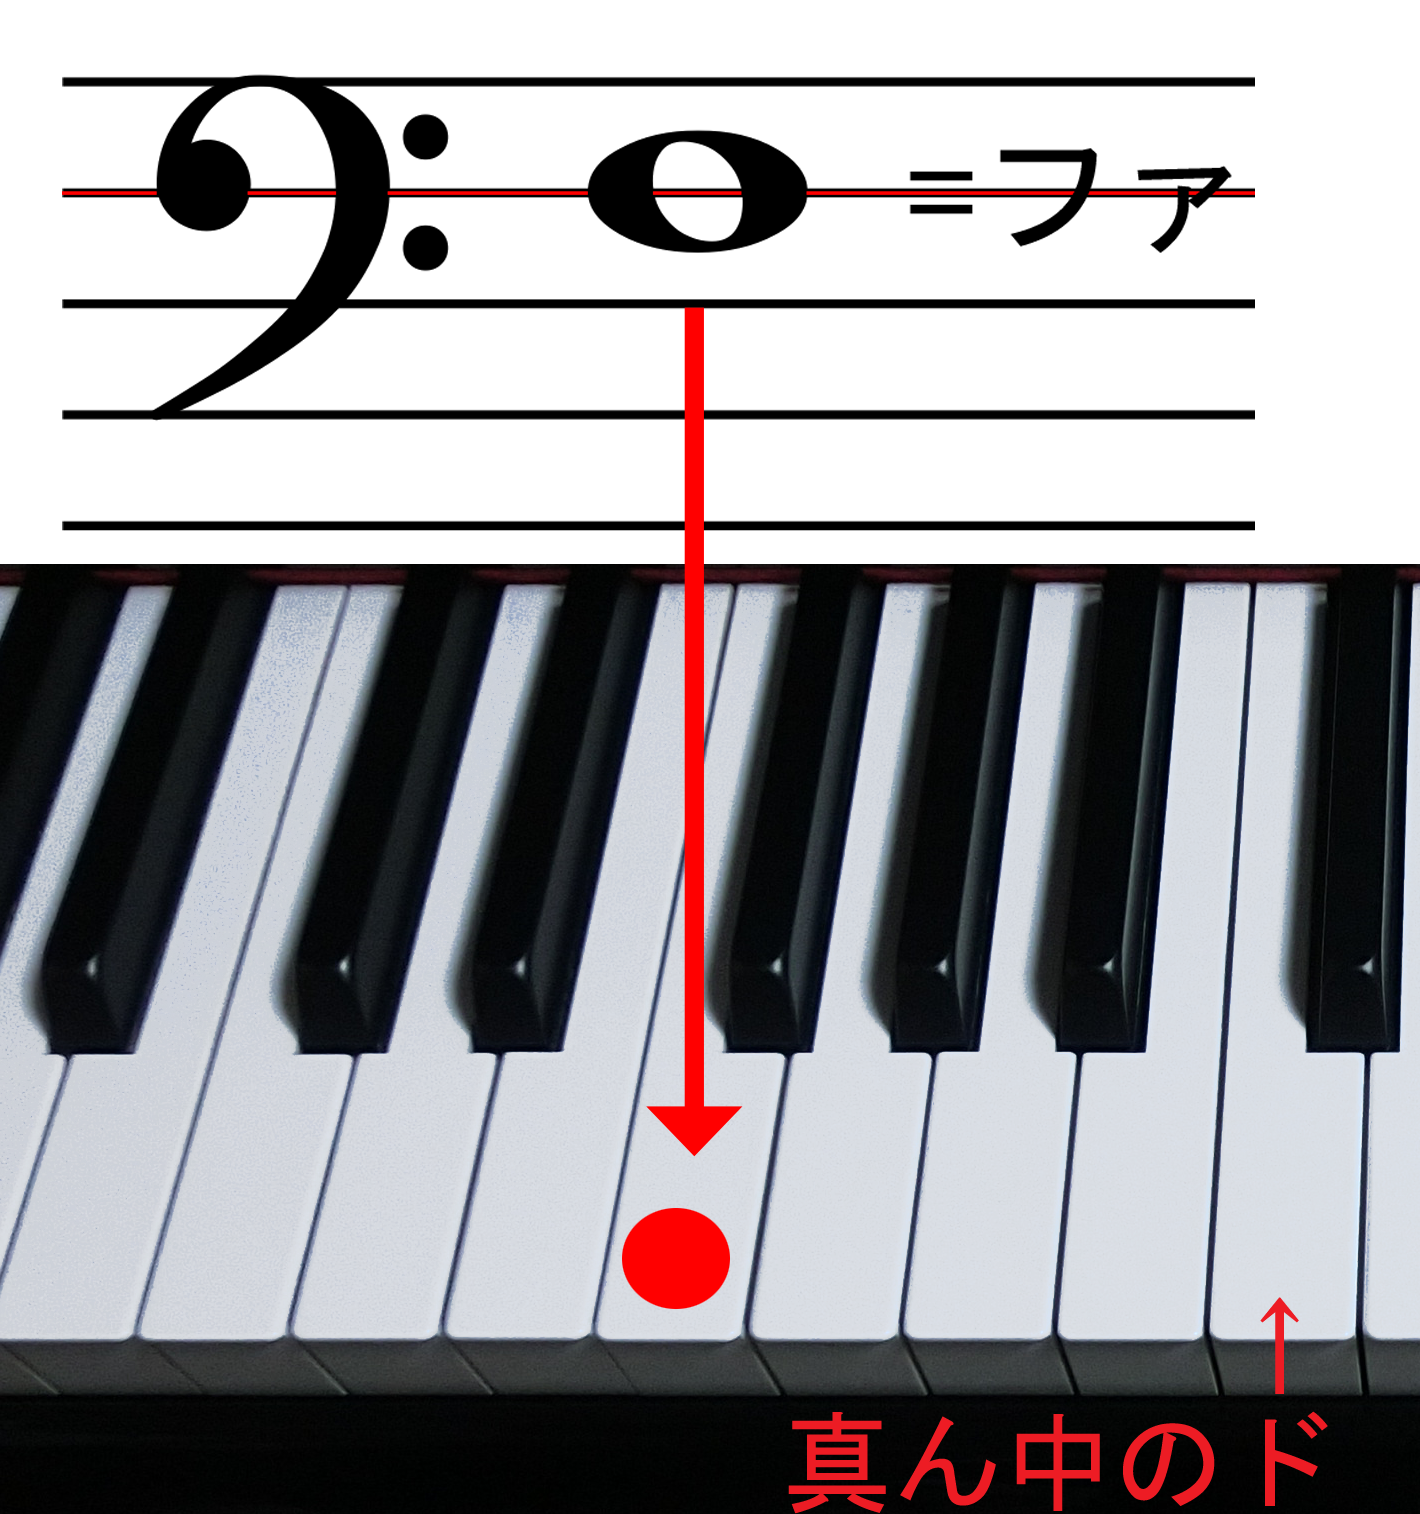 ヘ音記号のファと鍵盤の位置